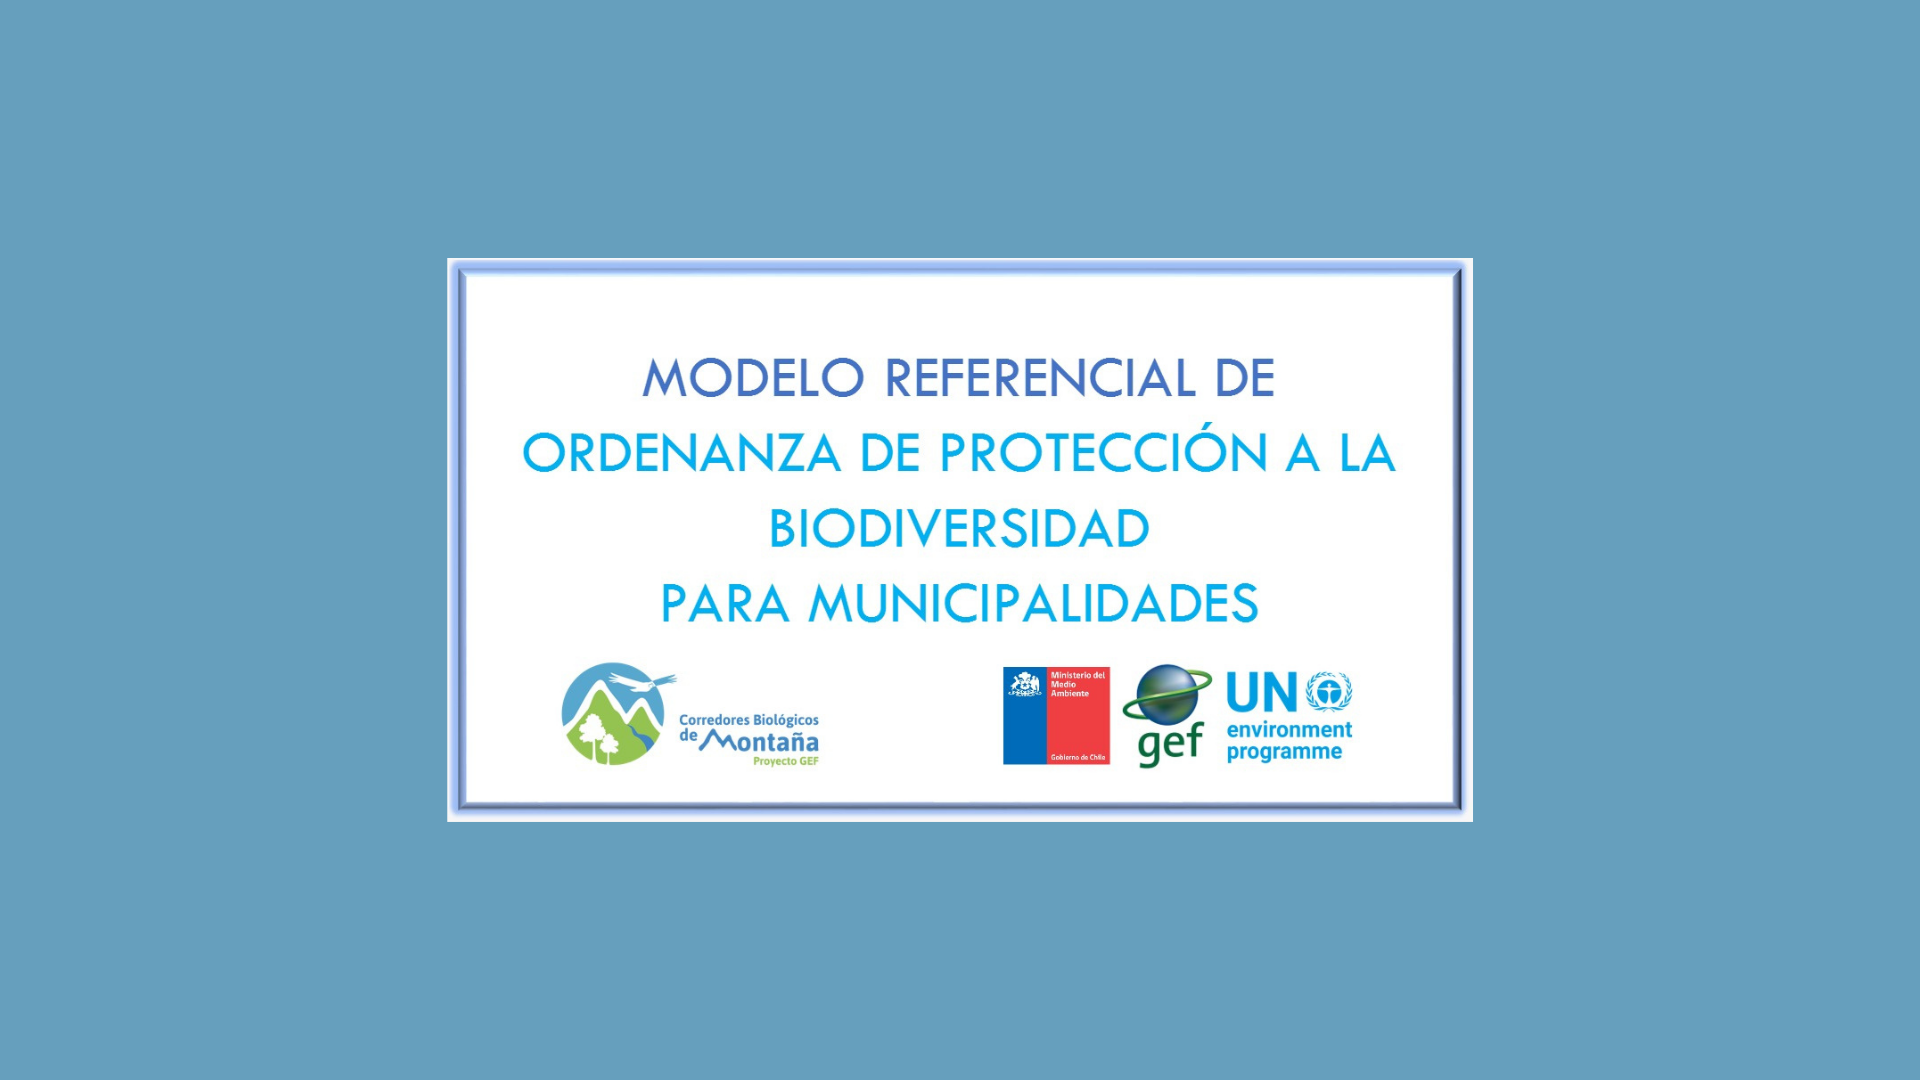 Ordenanza Modelo de protección a la biodiversidad para municipalidades: Un nuevo estándar de protección a nivel comunal.